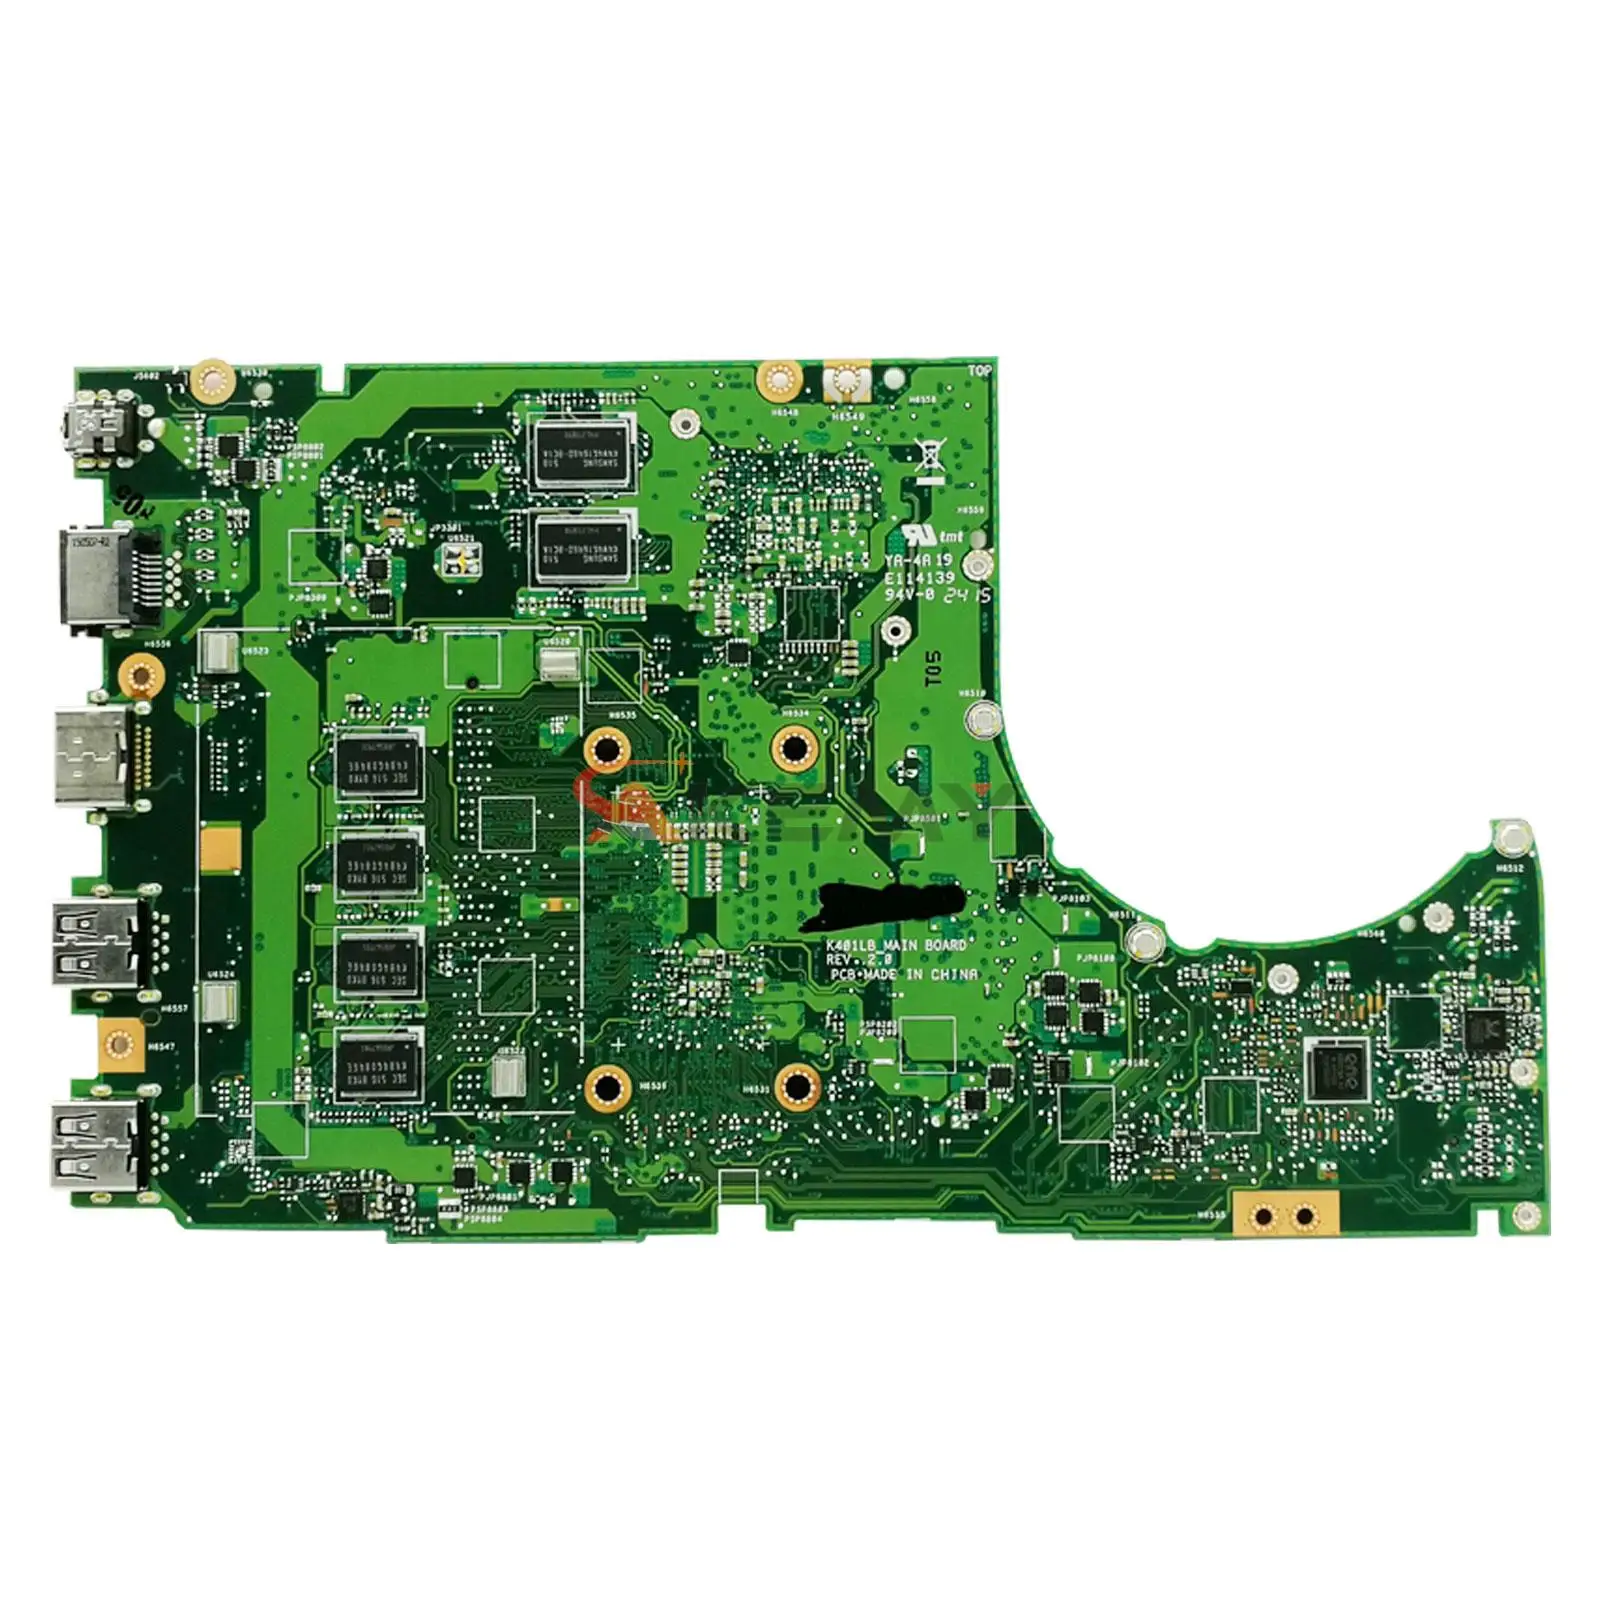 

K401L Mainboard For ASUS K401 K401LB V401LB A401LB Laptop Motherboard I3 I5 I7 5th Gen GT940M/2G 4GB/RAM